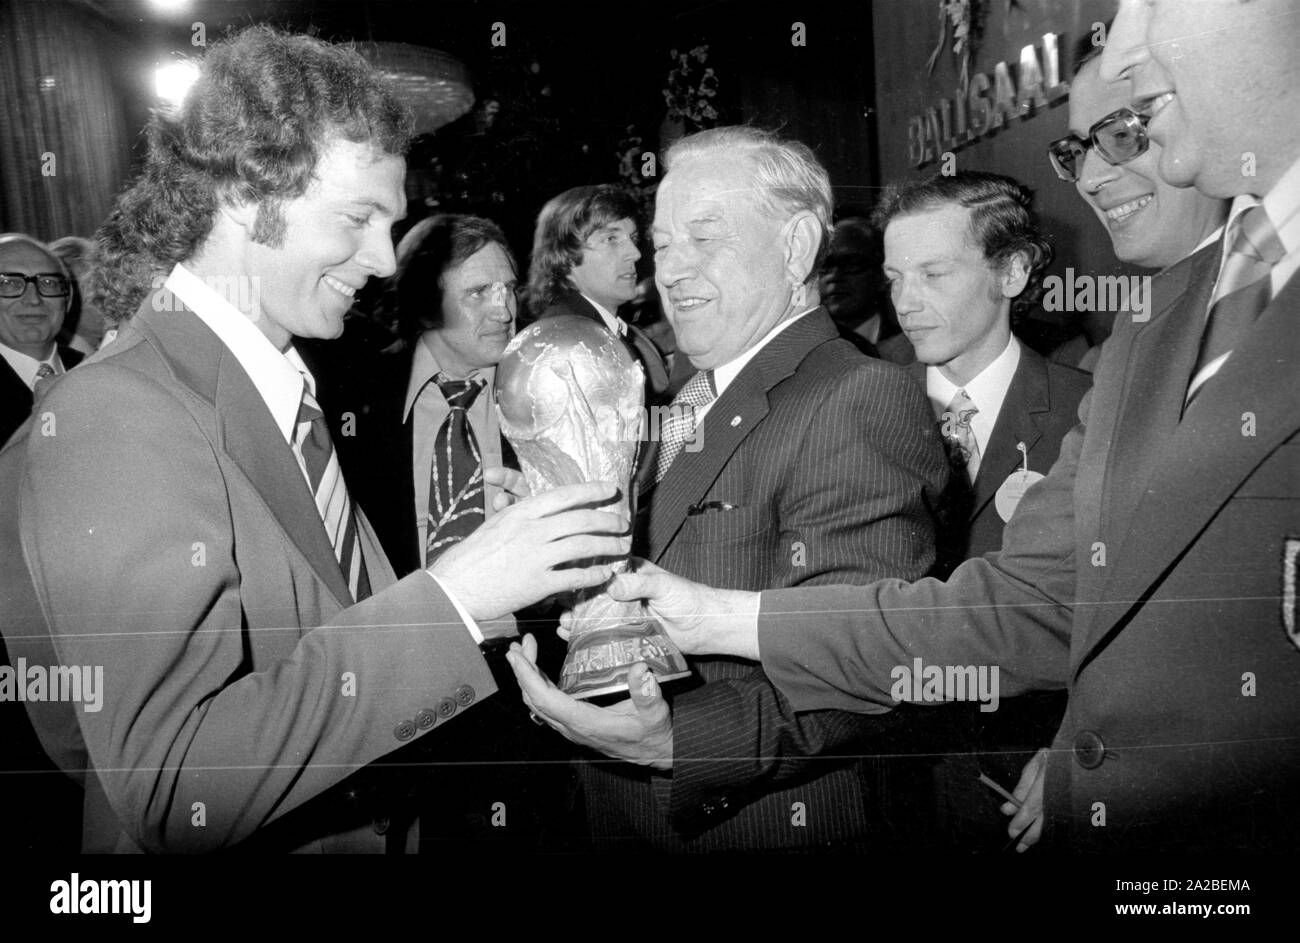 Franz Beckenbauer joueur (à gauche) et ministre d'Alfons Goppel (au centre) lors du banquet du président fédéral dans l'hôtel Hilton à Munich. Ils détiennent la FIFA World Cup Trophy dans leurs mains. Banque D'Images